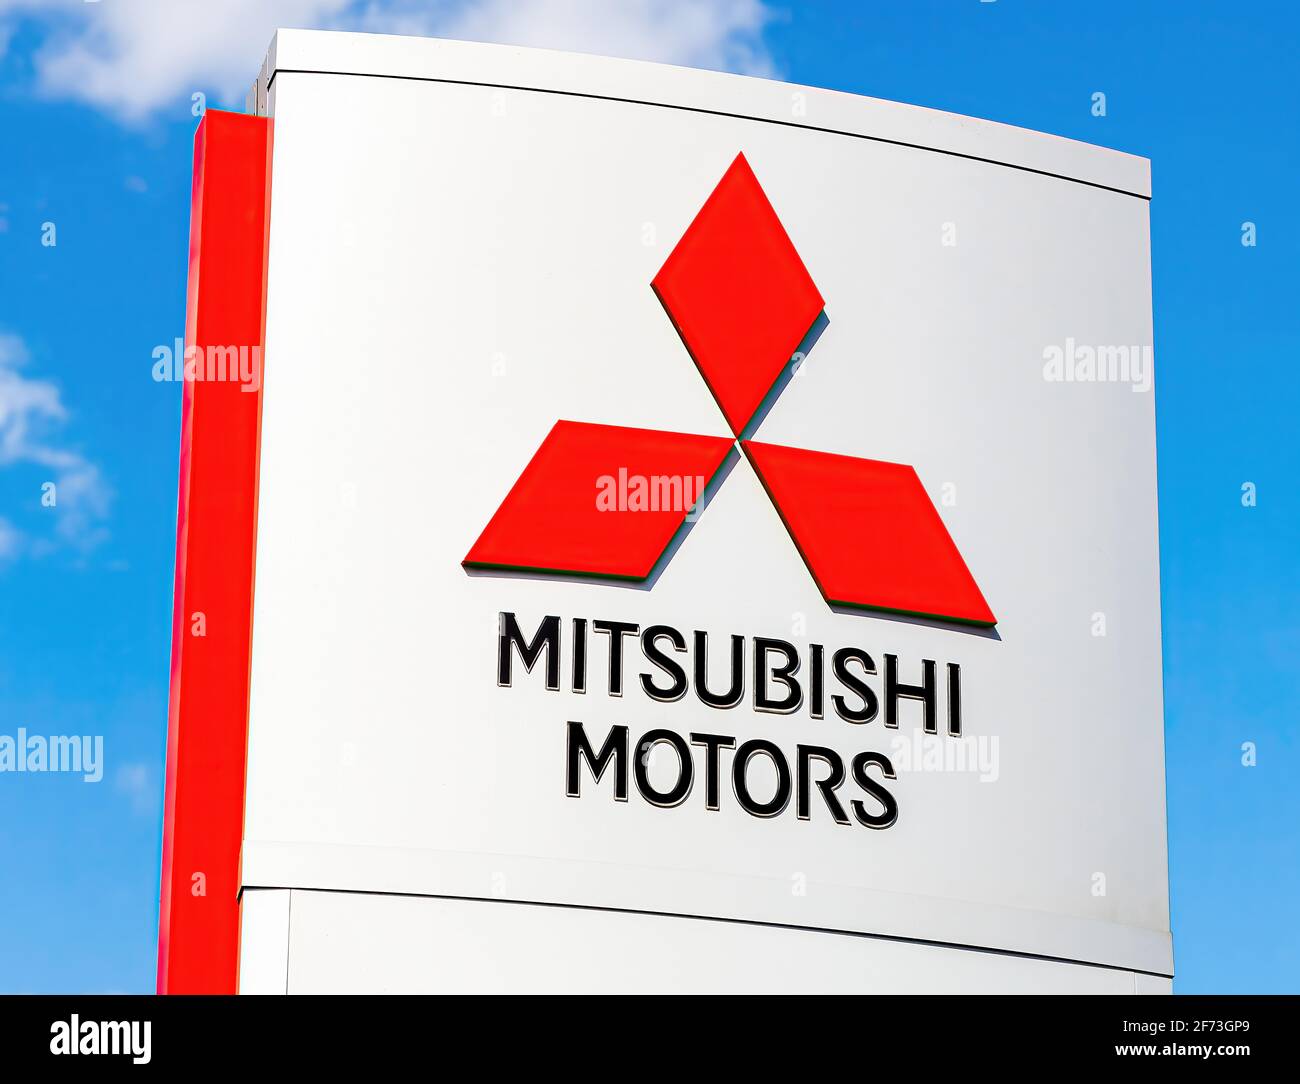 Samara, Russie - 11 mai 2016 : logo Mitsubishi sur un panneau à l'extérieur de la voiture ou de la concession automobile contre le ciel bleu Banque D'Images